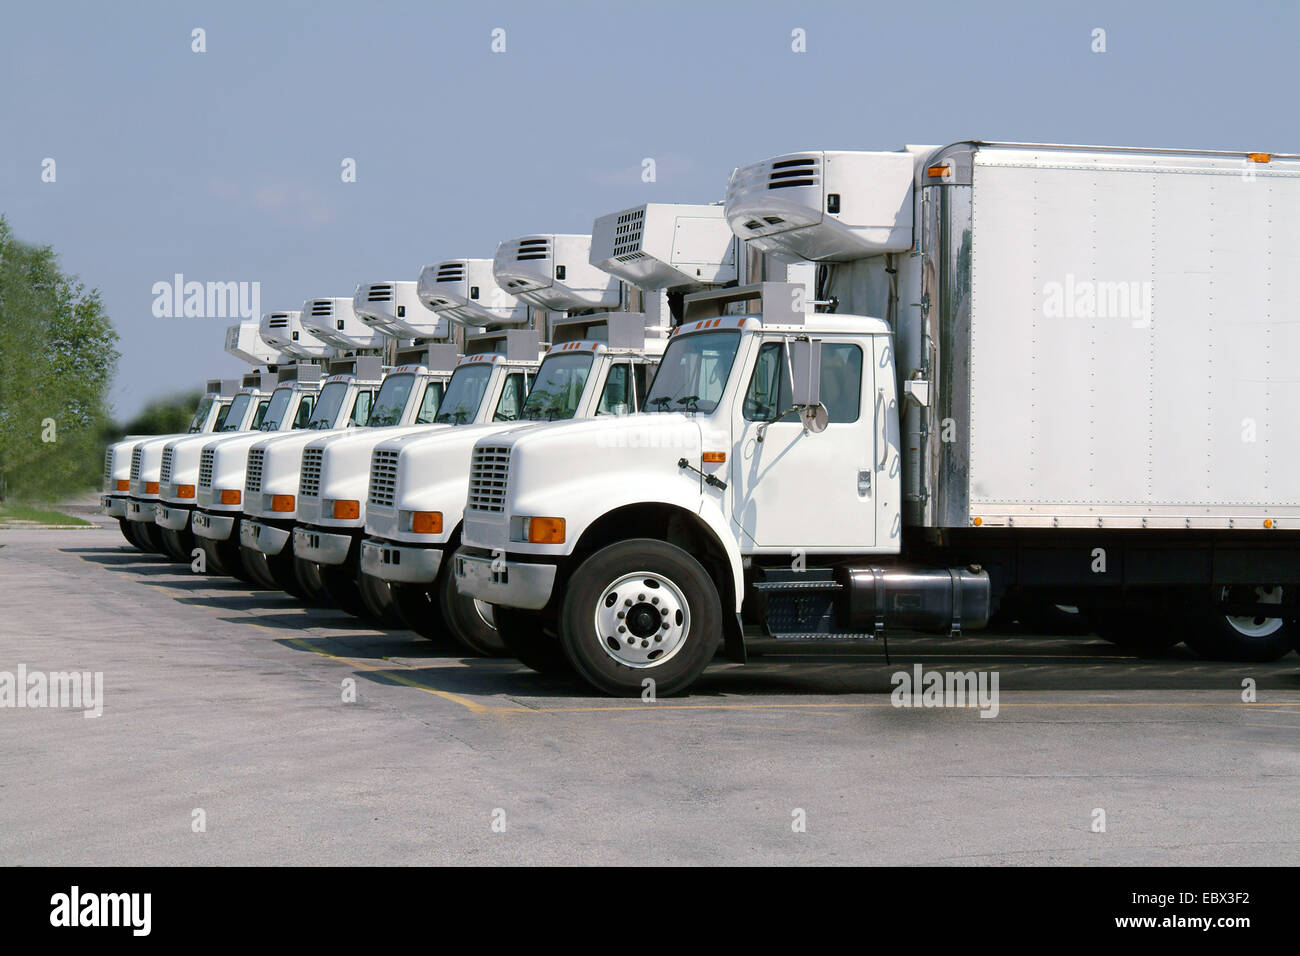 Huit camions idenentical in côte à côte Banque D'Images